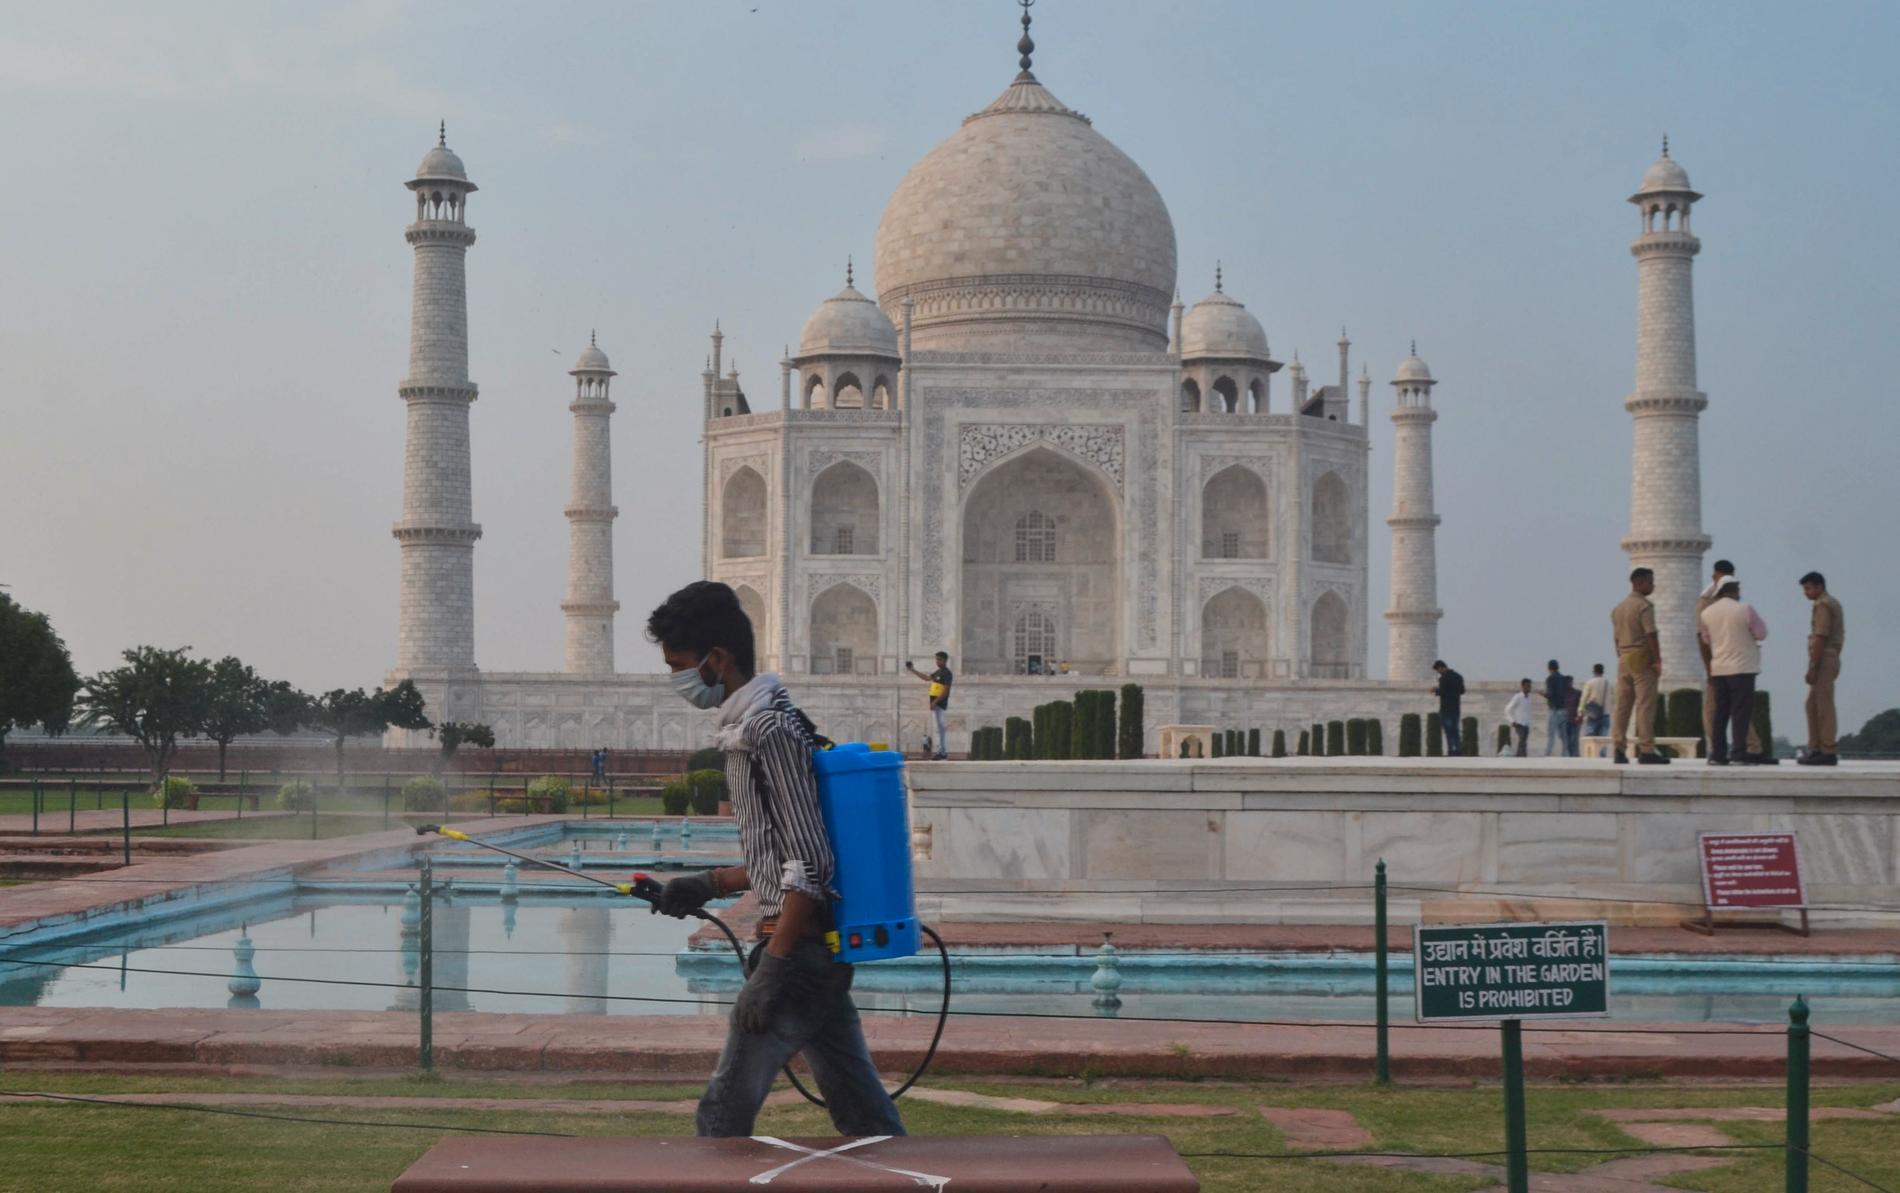 En man desinficerar området runt mausoleet Taj Mahal i Agra, Indien. Det världsarvslistade monumentet öppnade på onsdagen efter att ha varit stängt sedan april på grund av pandemin.